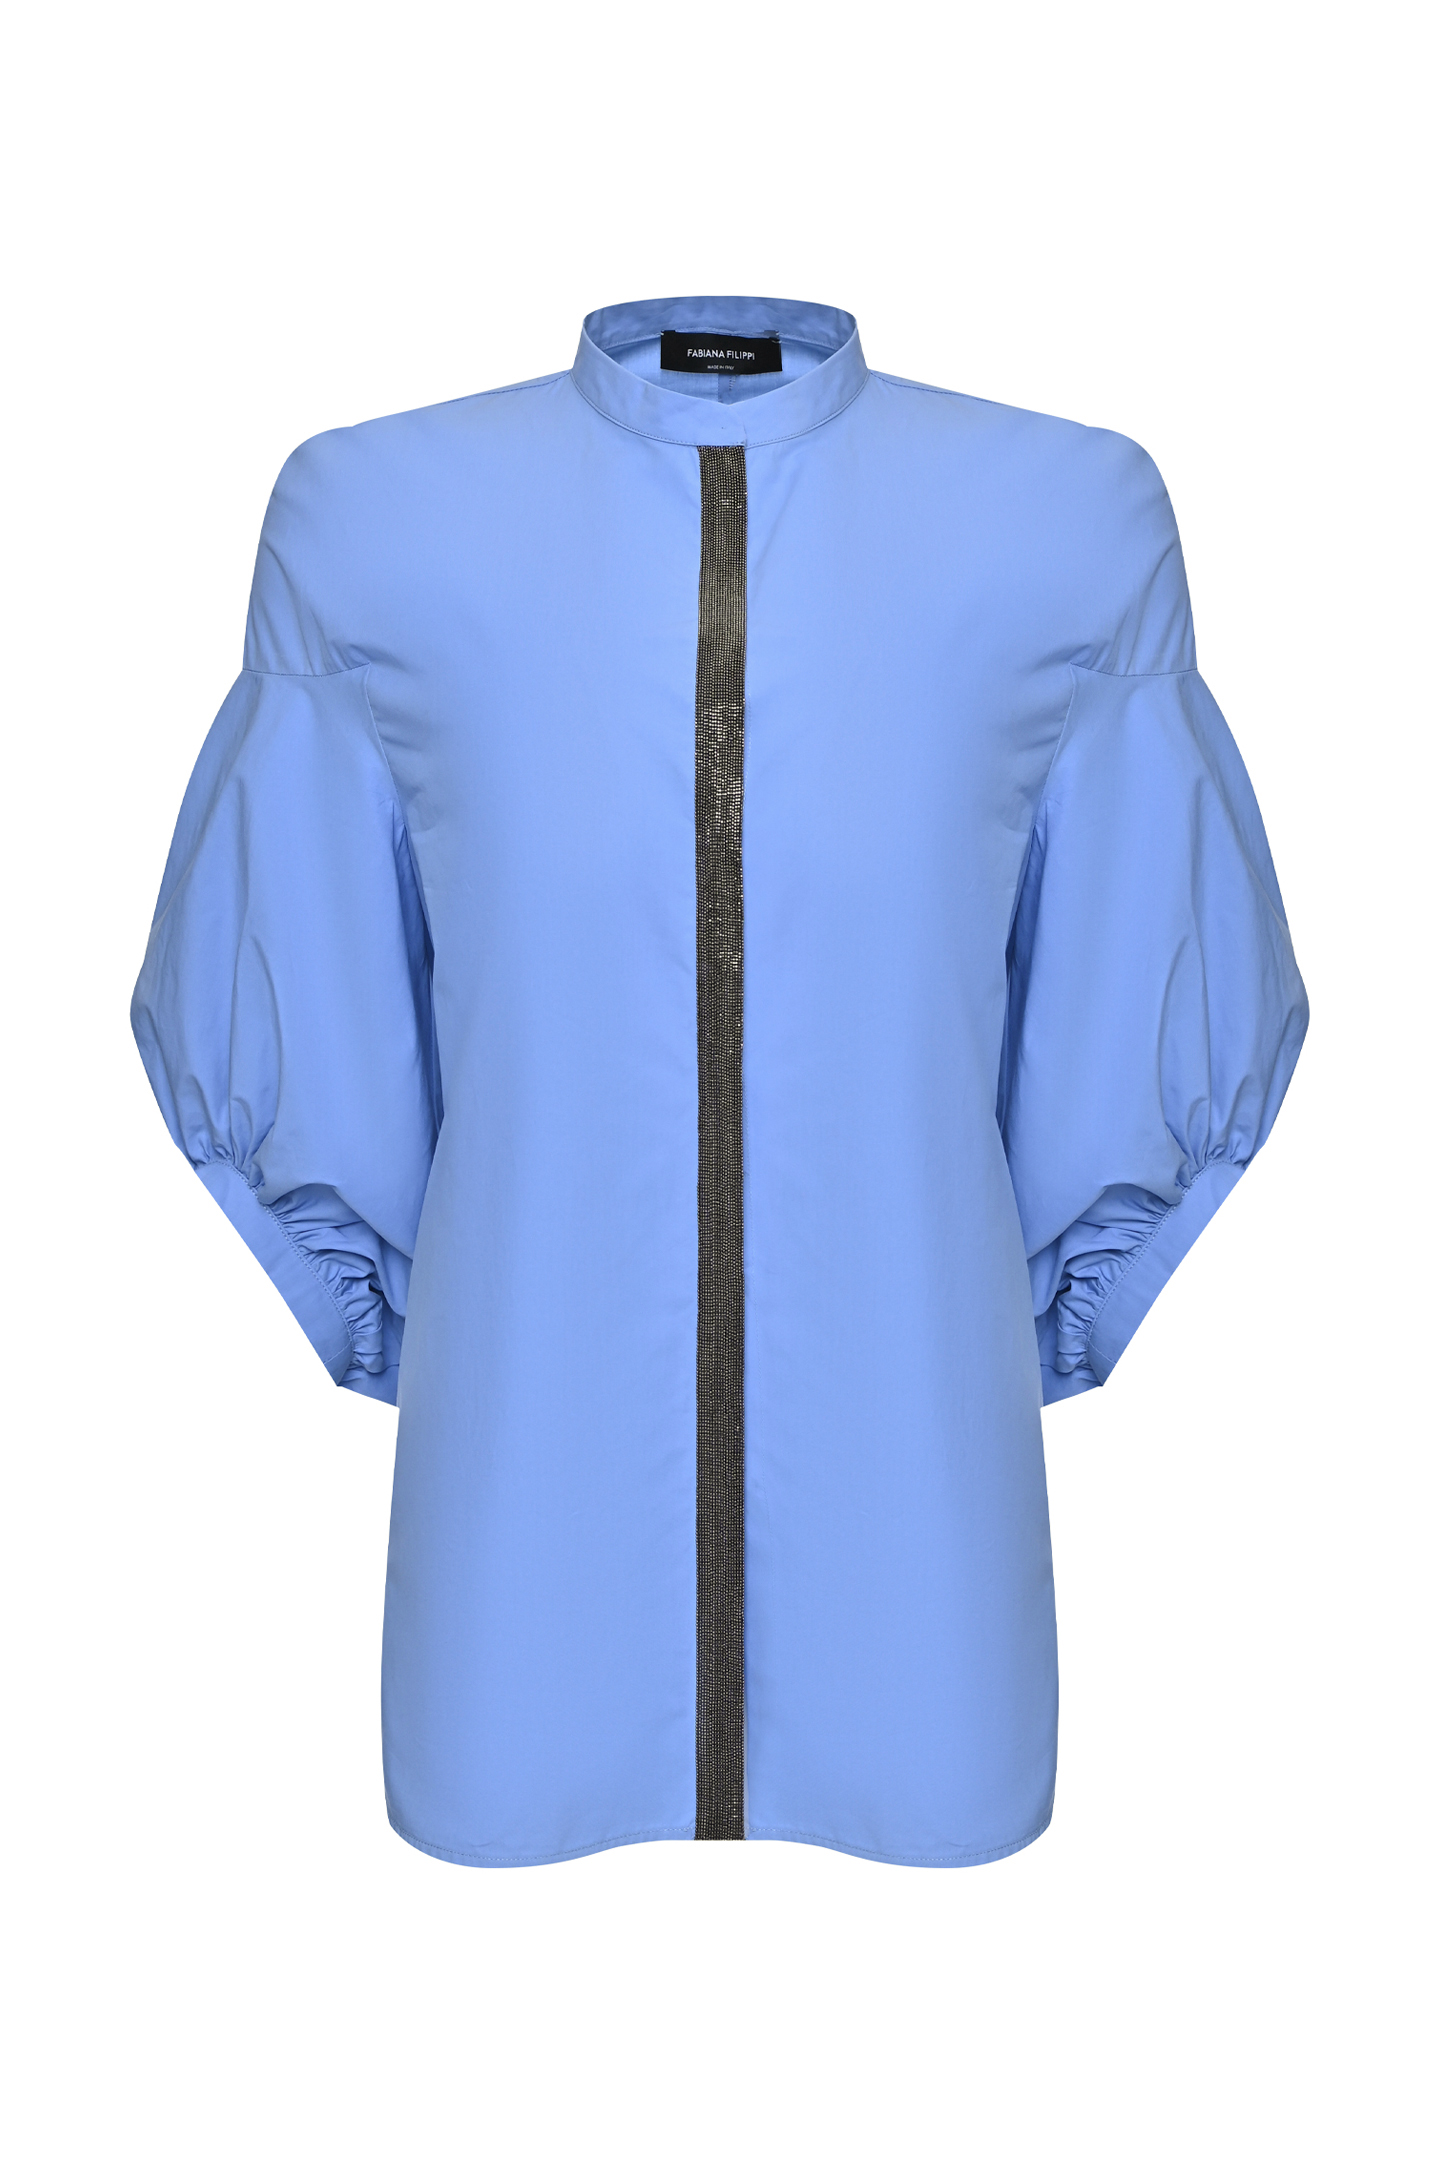 Блуза FABIANA FILIPPI CAD273B644I806, цвет: Голубой, Женский